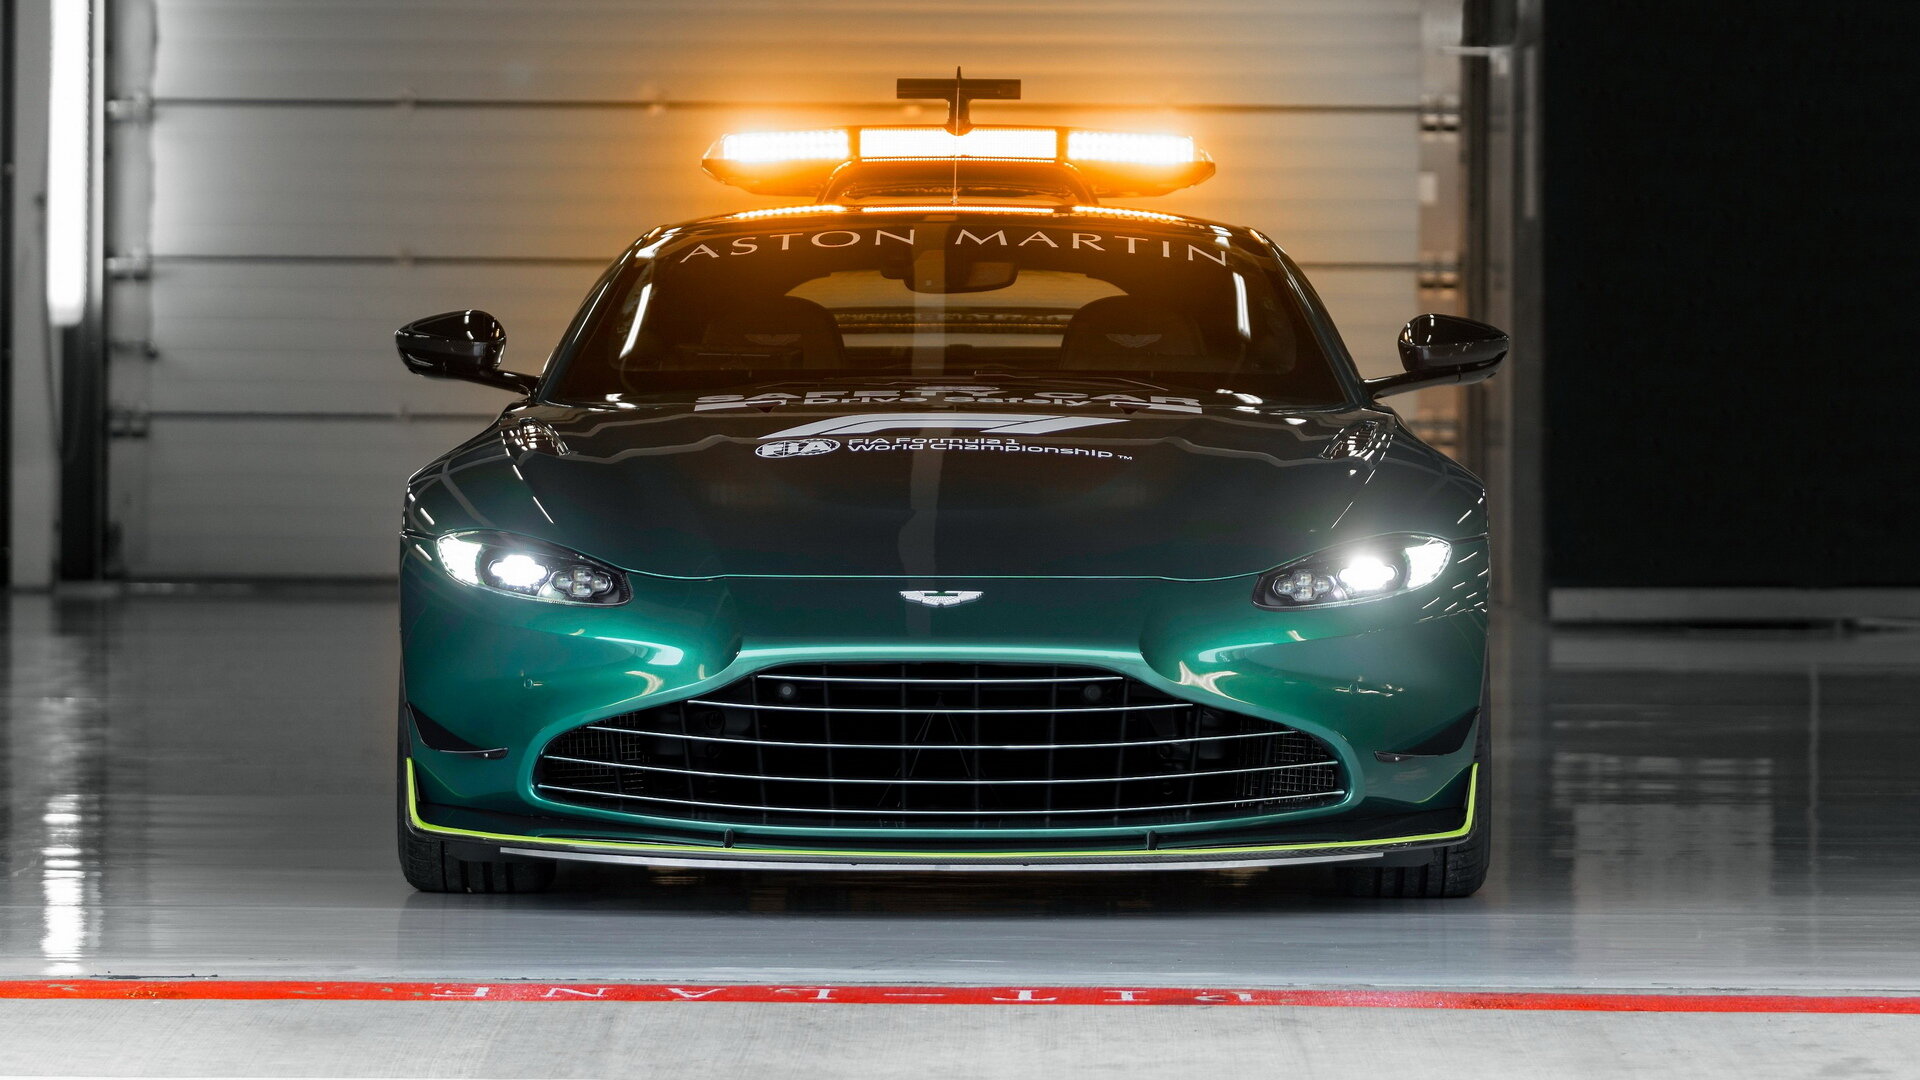 Safety car Aston Martinu pro sezónu 2021